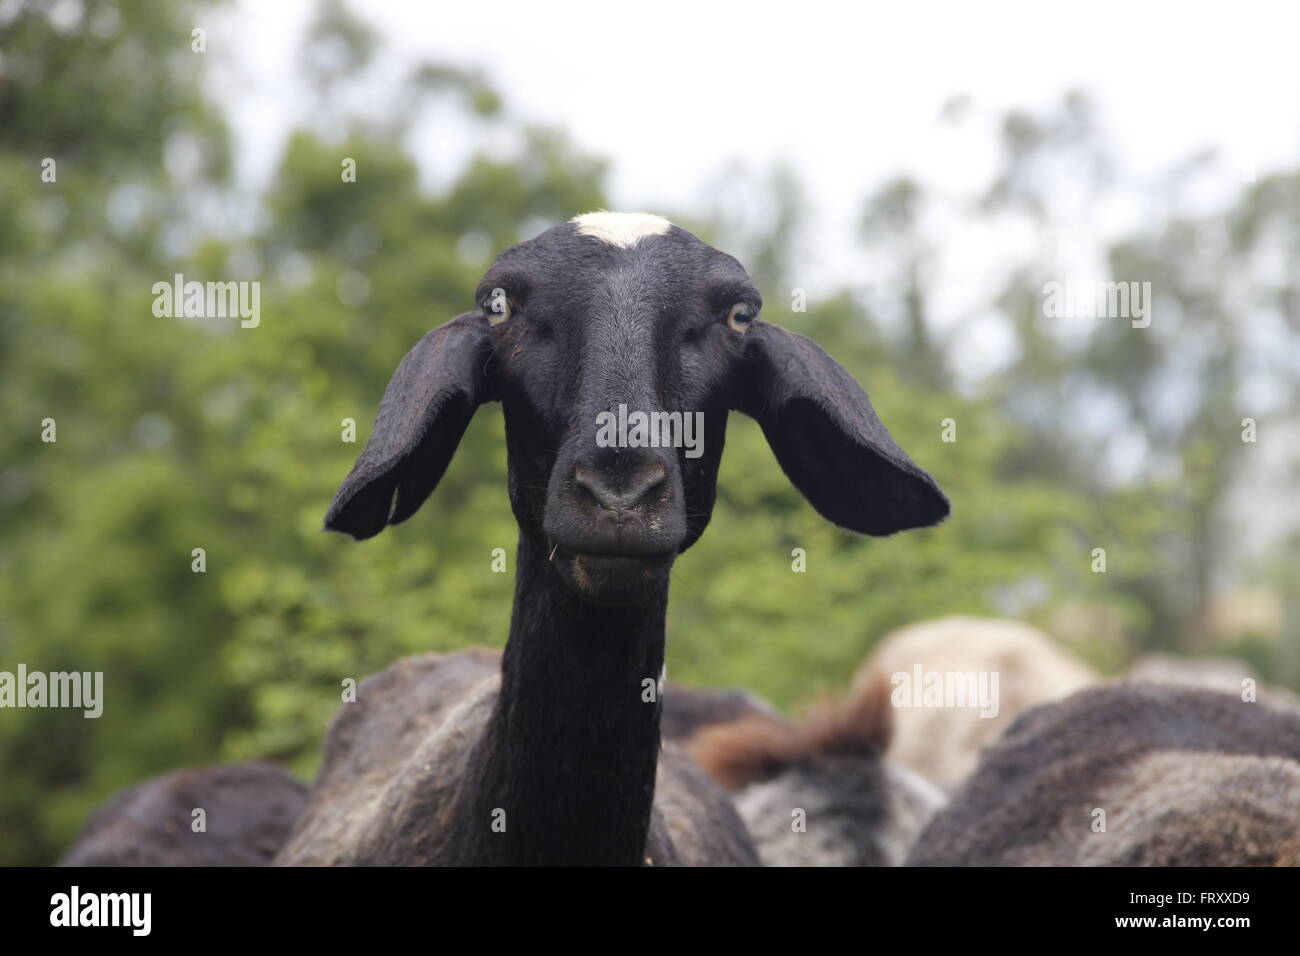 goat stating at camera Stock Photo